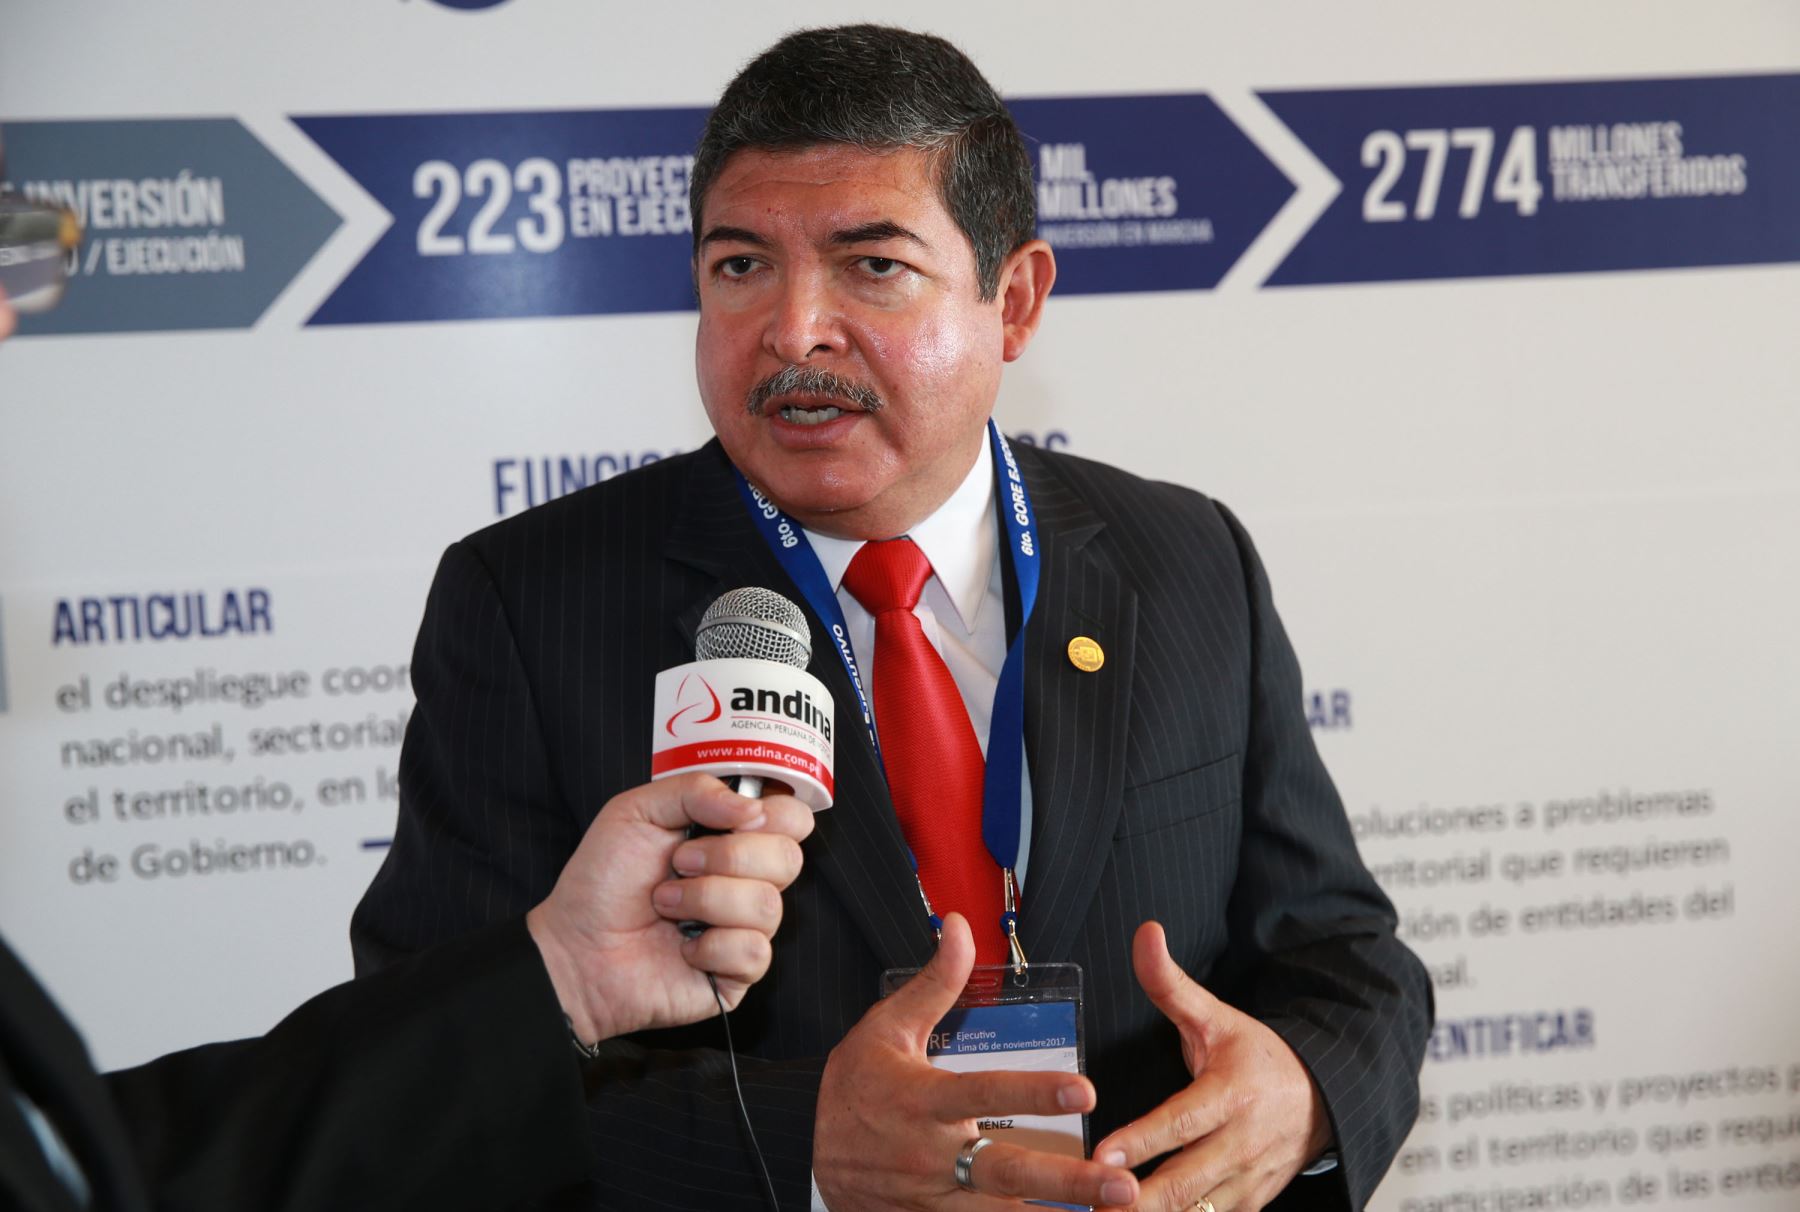 El pleno del Jurado Nacional de Elecciones suspendió a Omar Gustavo Jiménez Flores en el cargo de gobernador regional de Tacna. ANDINA/Norman Córdova